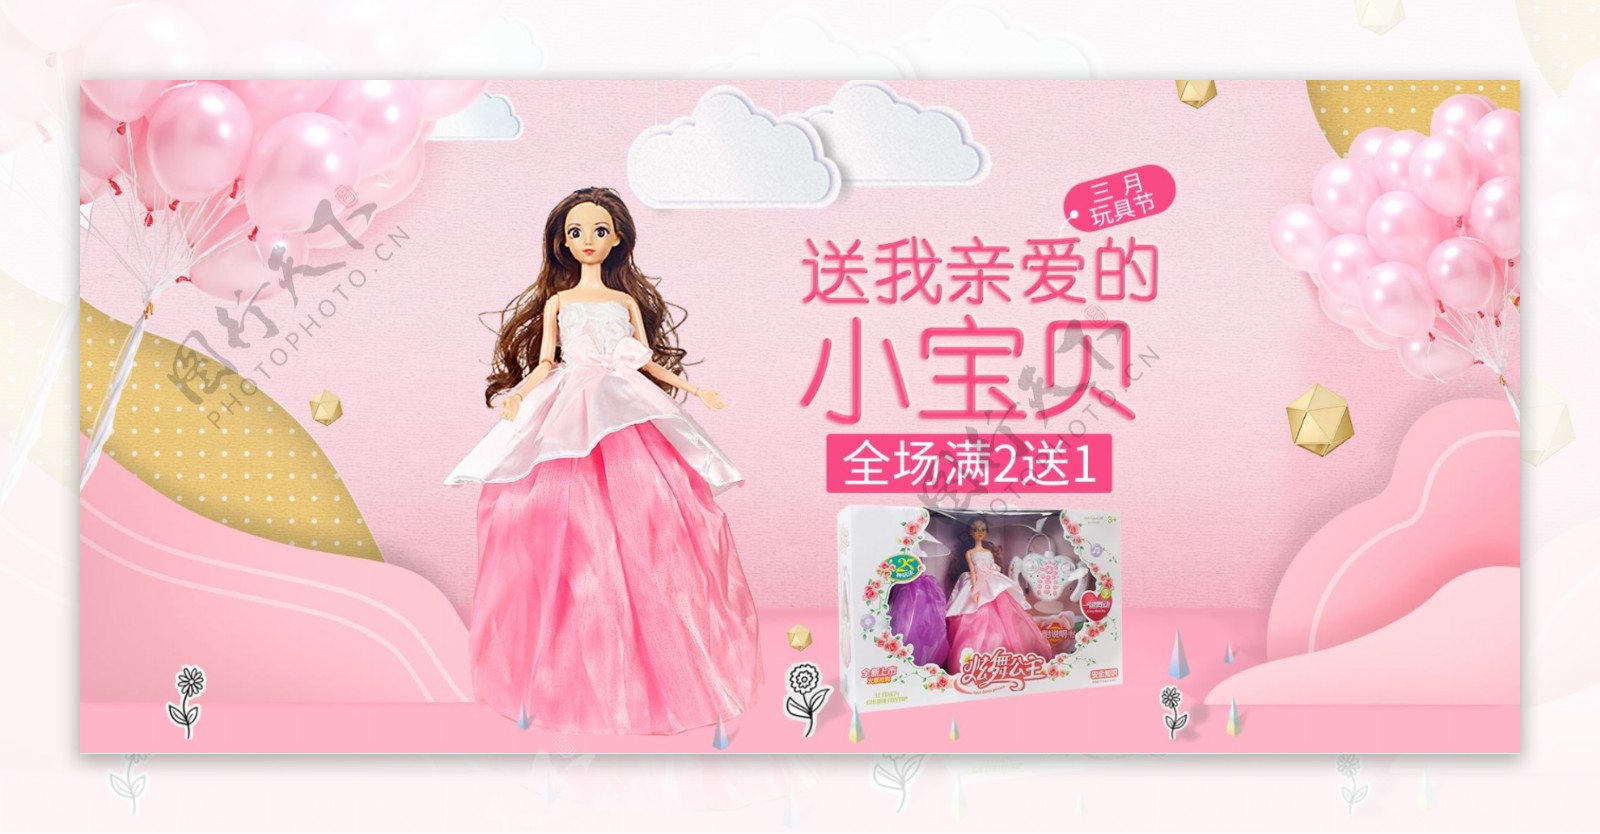 3月玩具节活动促销粉色女孩儿童娃娃气球云